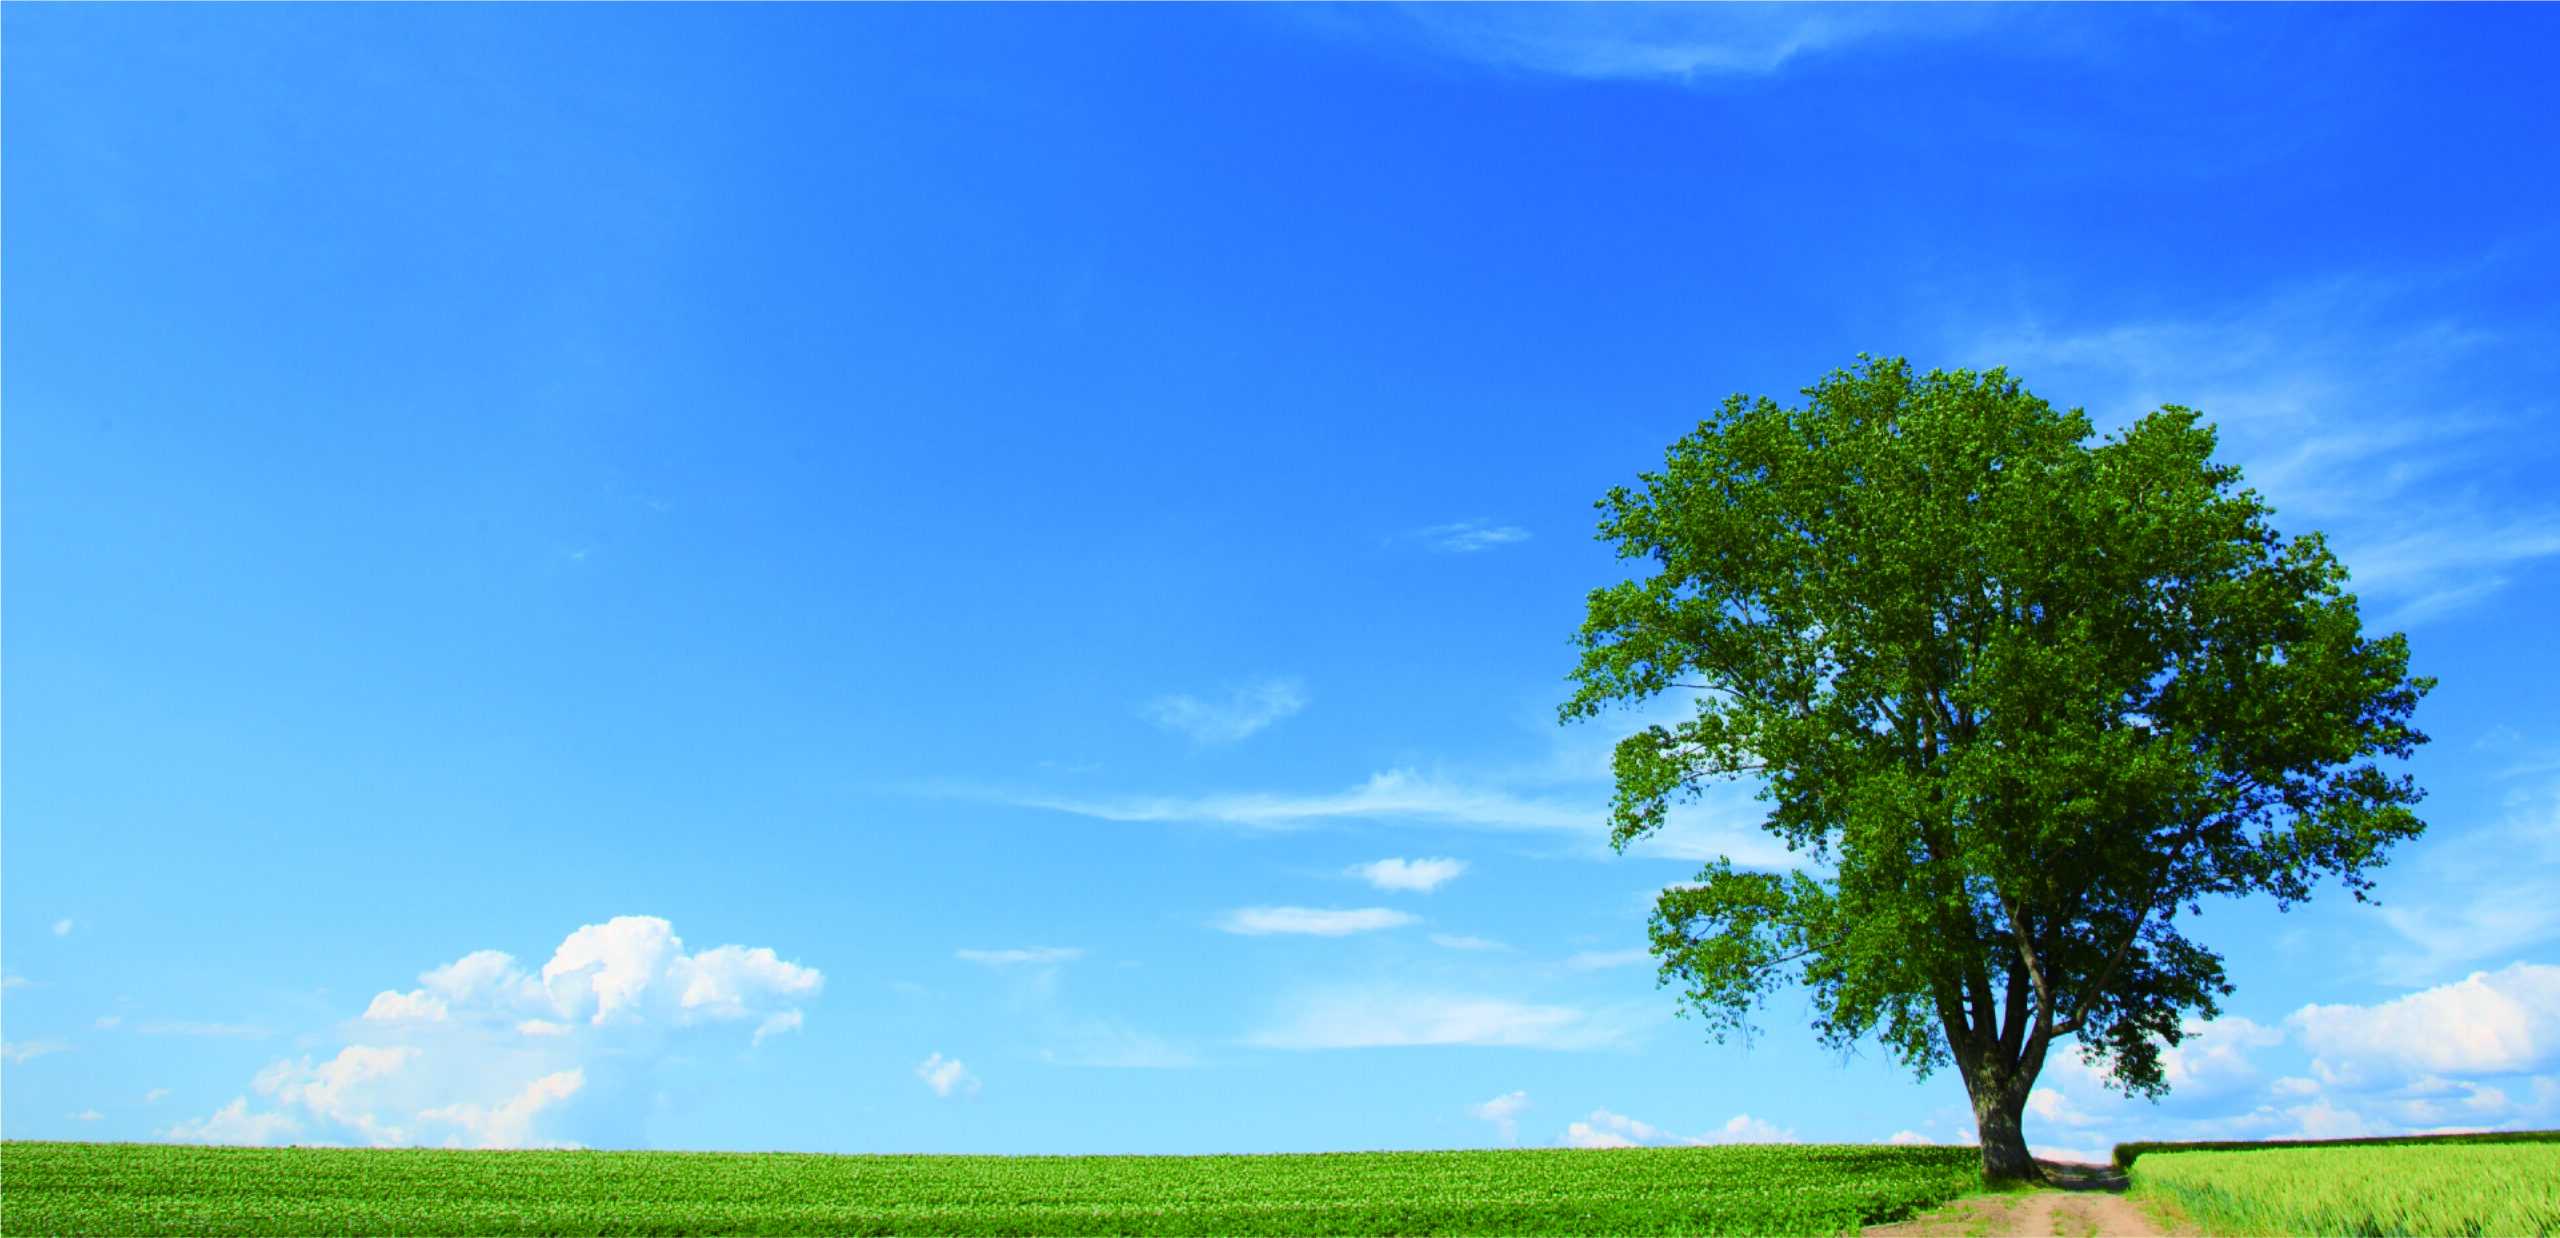 ヘッダー画像 青空に大きな木が一本生えている写真です